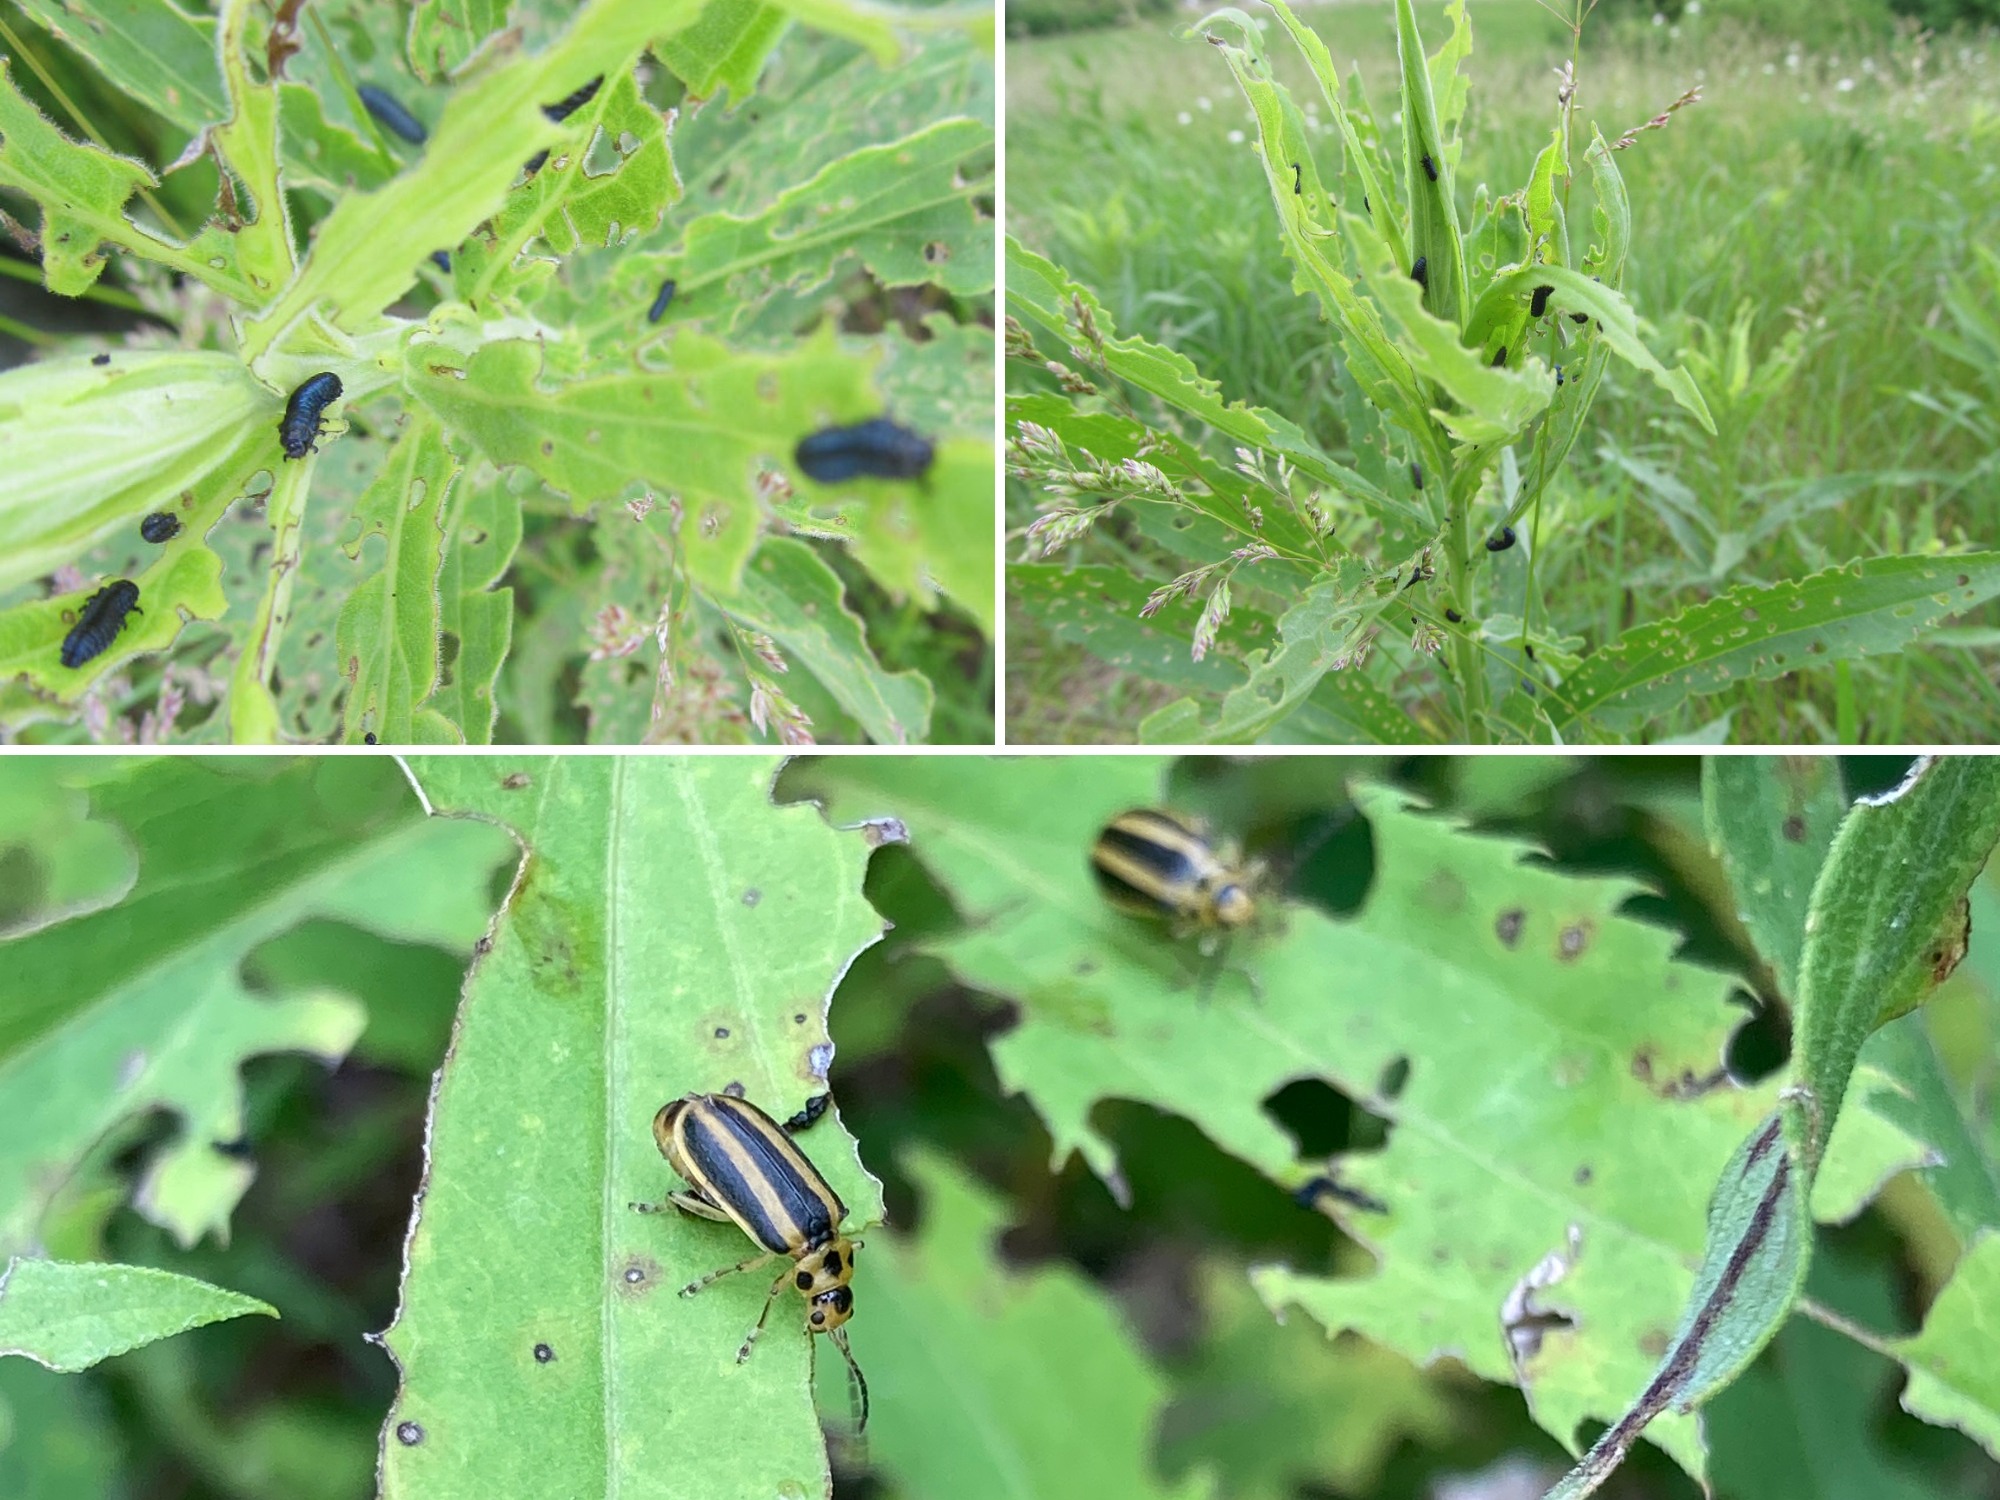 Leaf beetle larvae and adults